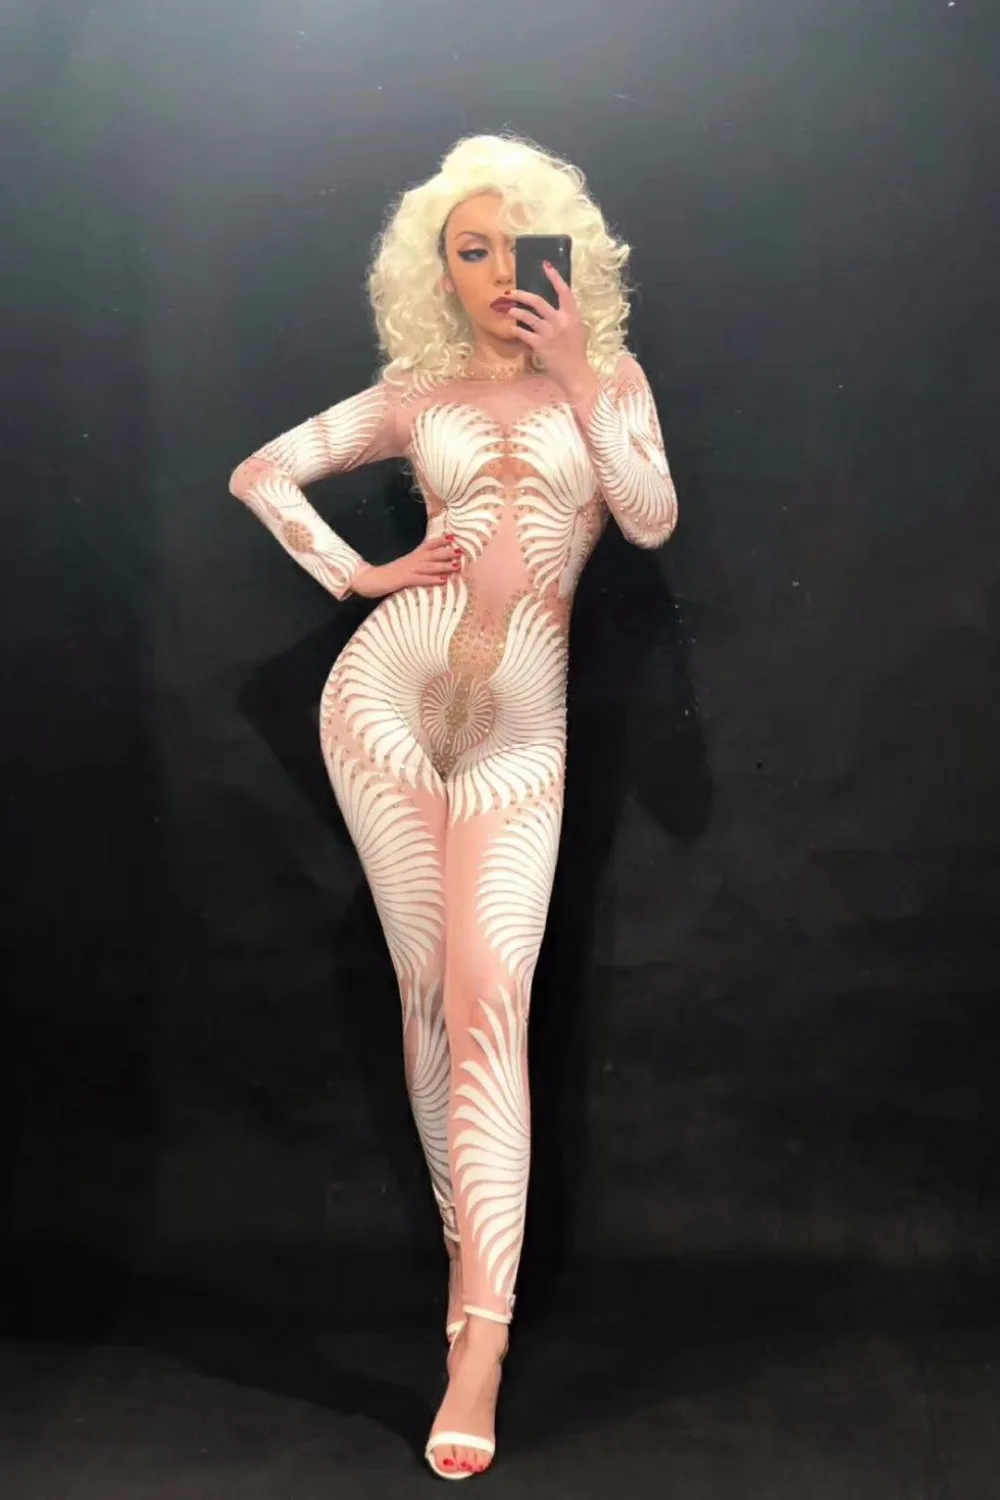 Zentai Костюм блестящие тела сексуальные женщины горный хрусталь костюм Джаз танцевальный костюм для леди сексуальный DS клуб бар Dj